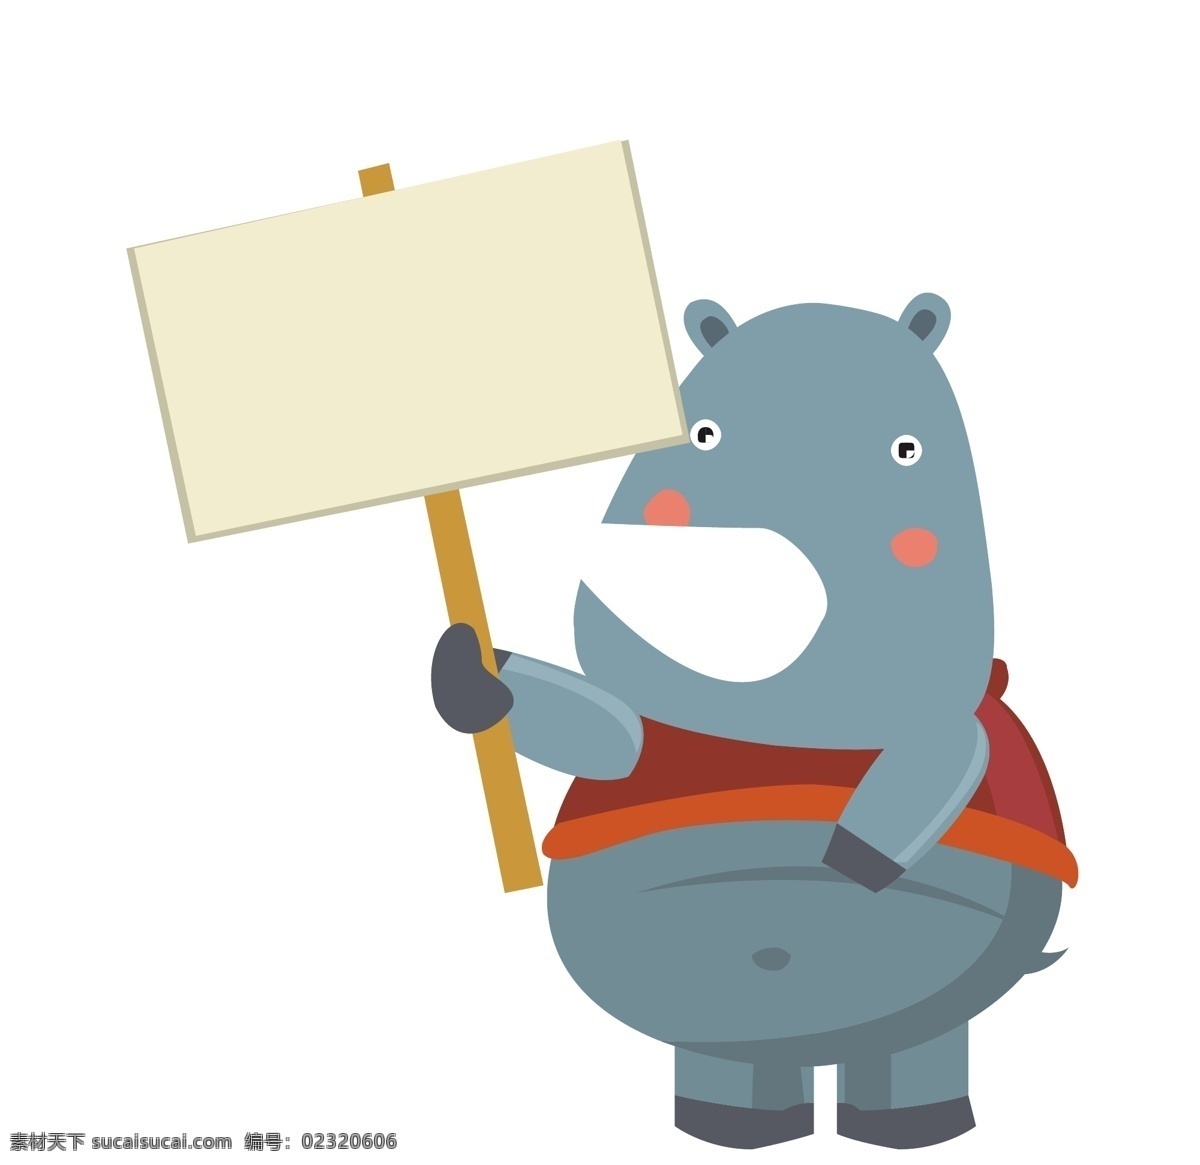 矢量 动物 举 牌 牌子 的卡 通 卡通 可爱 搞笑动物 动物表情